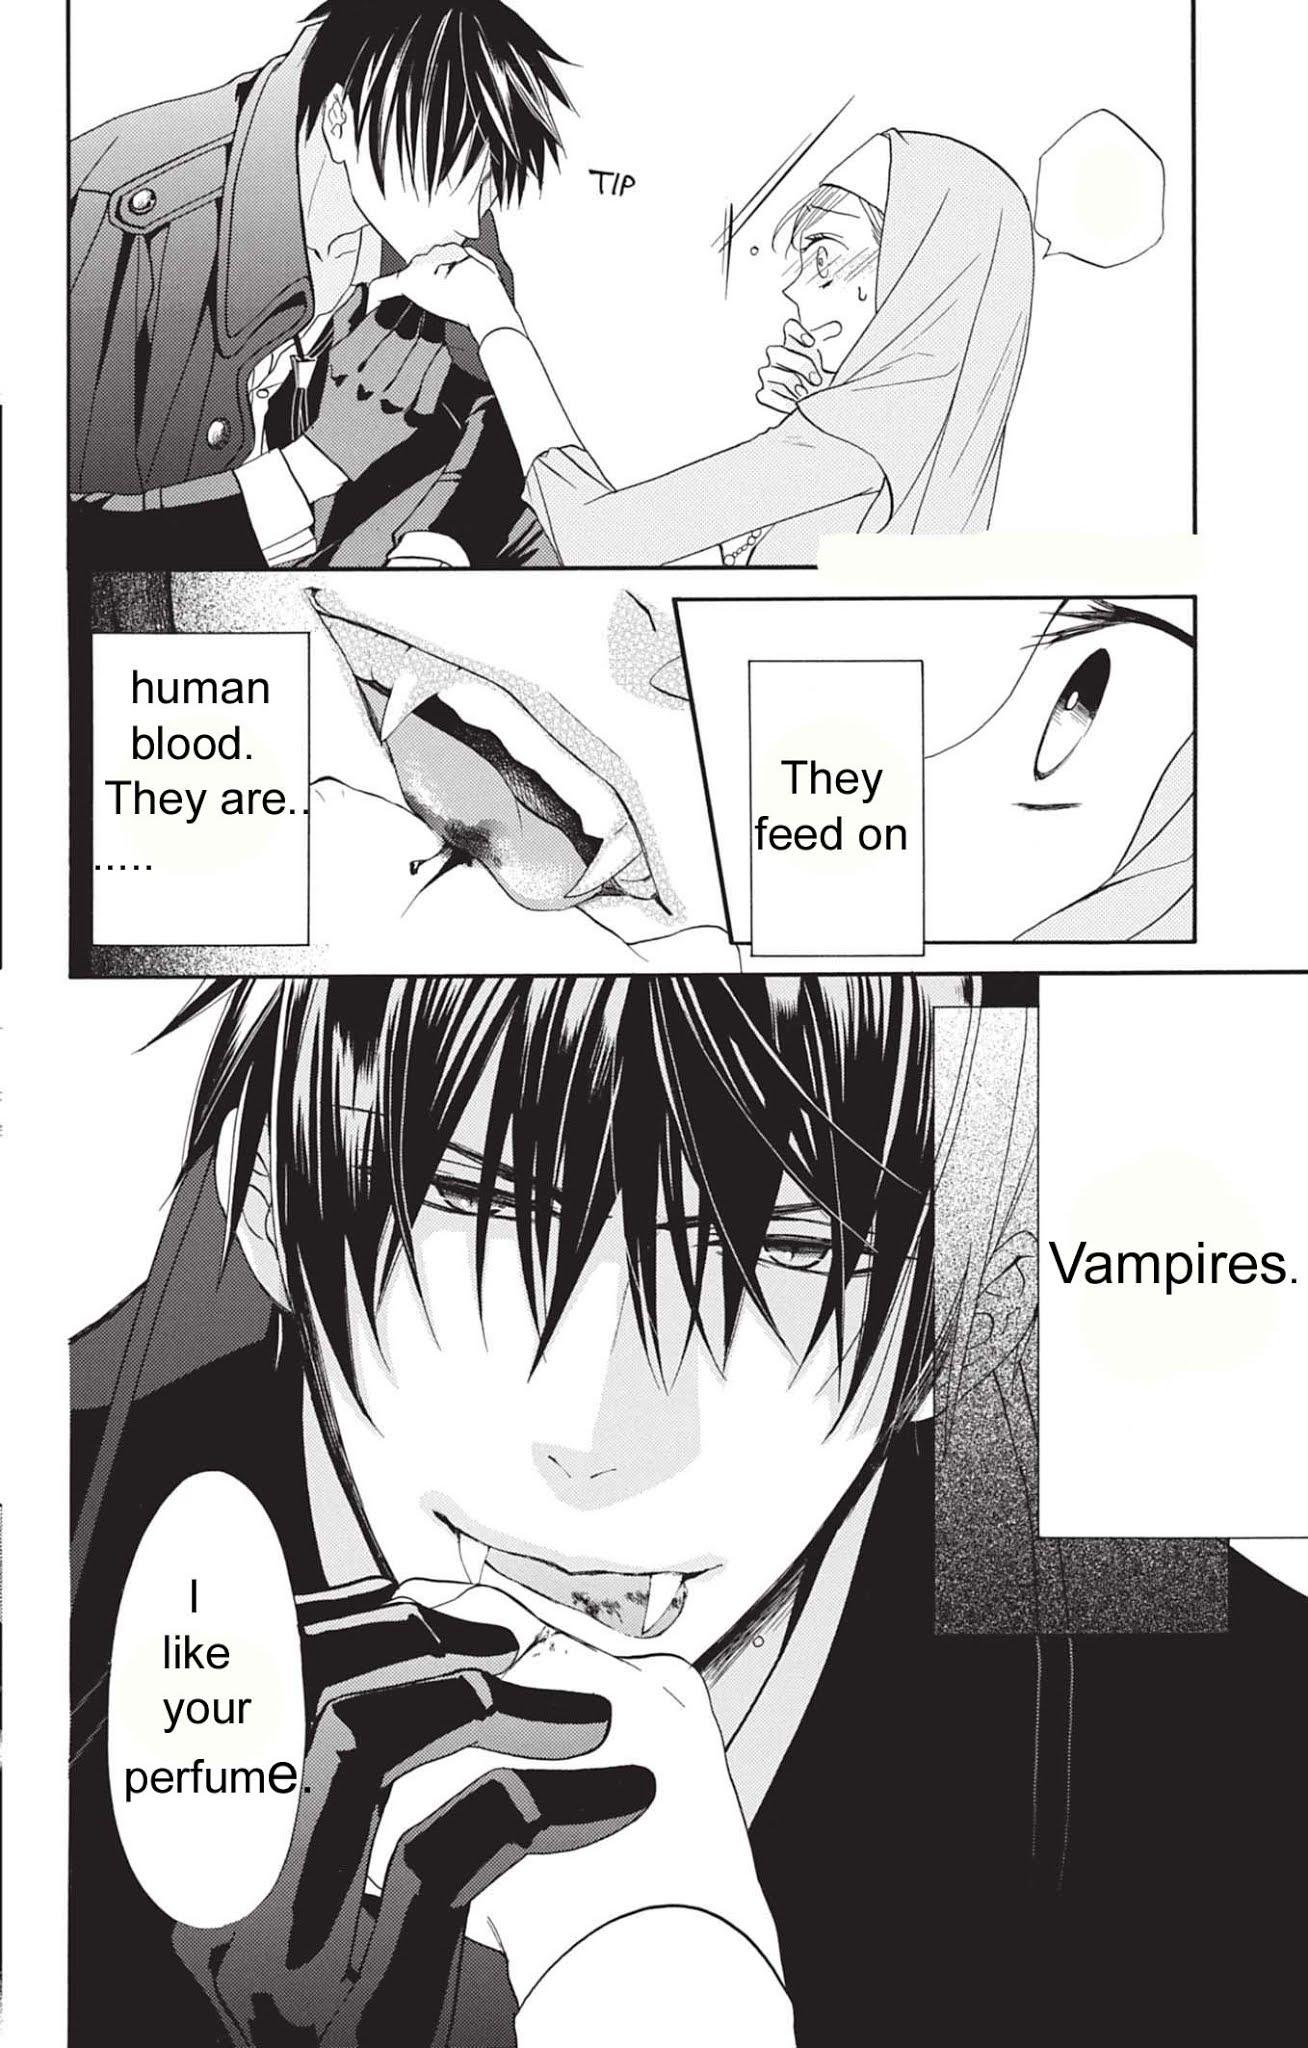 Манга романтика вампиры. Монашка и вампир Манга. Манга про вампиров. Чтение манги. Поцелуй вампира Манга.